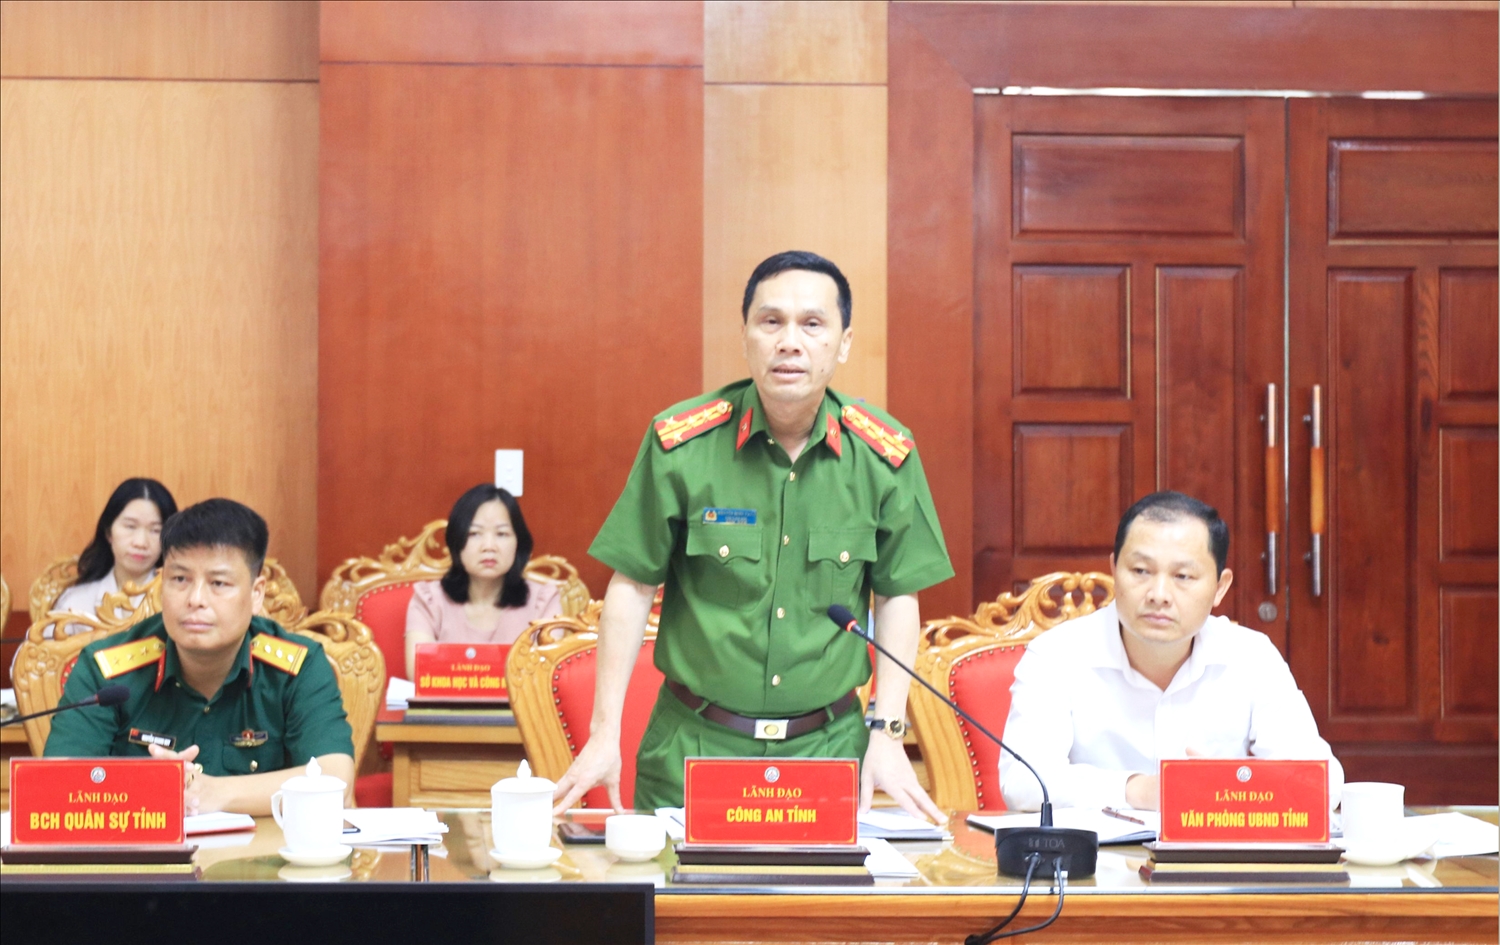  Theo Đại tá Nguyễn Minh Tuấn - Phó Giám đốc Công an tỉnh Lạng Sơn, hàng ngày tại cửa khẩu Chi Ma vẫn có từ 40 - 50 xe hàng hóa nhập khẩu được thông quan theo thủ tục quy định, chưa phát hiện có tiêu cực